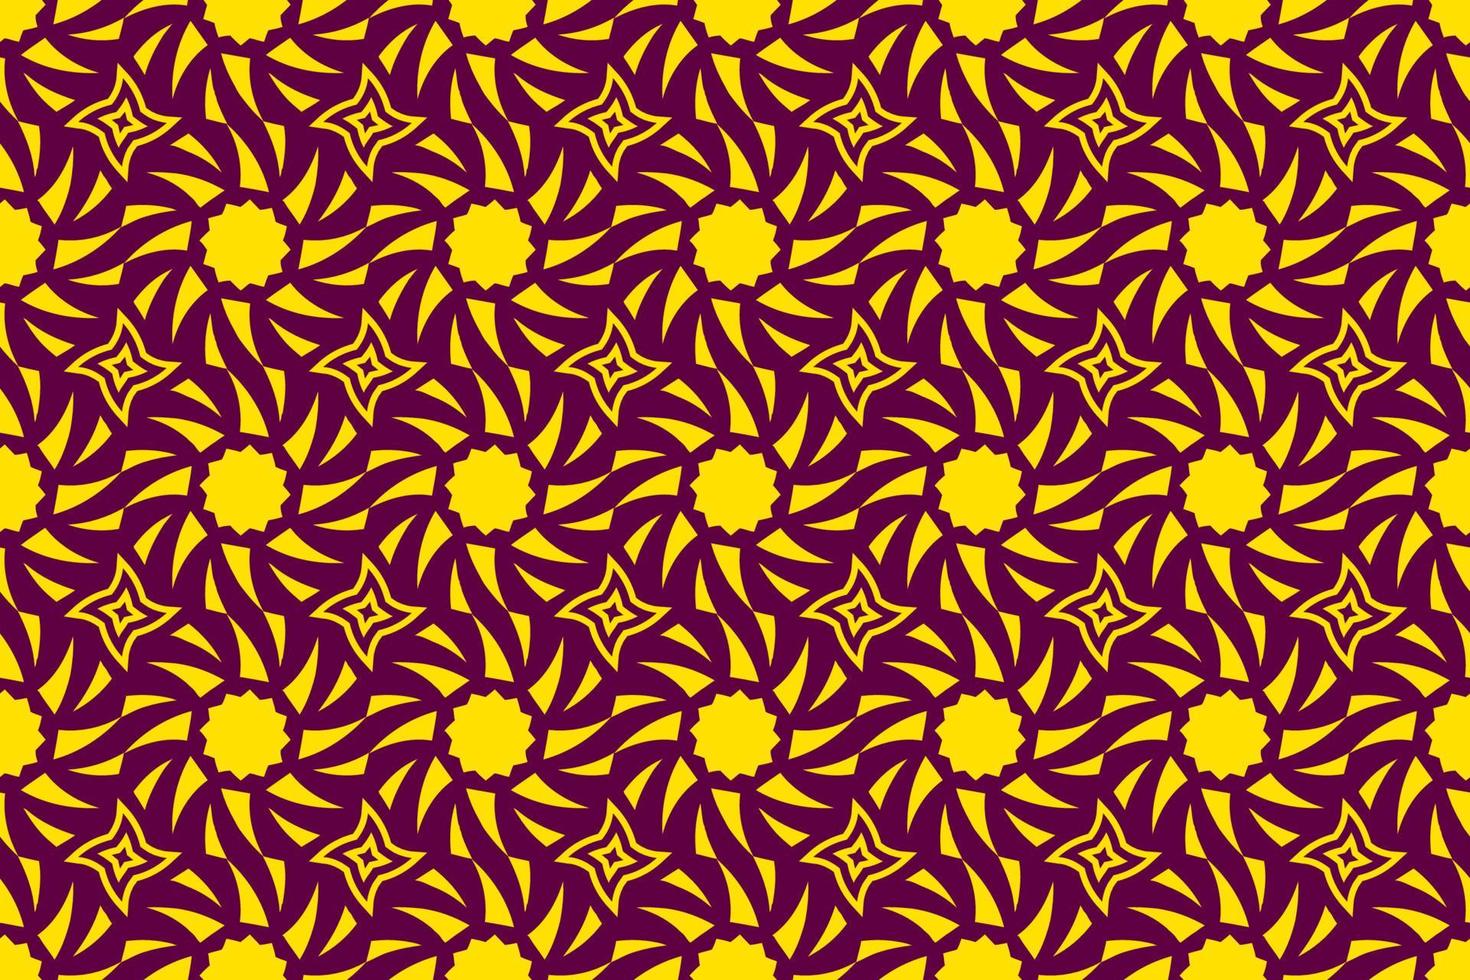 sol de patrones sin fisuras. patrón abstracto repetitivo con el símbolo del sol. plantilla para sus proyectos de diseño. vector